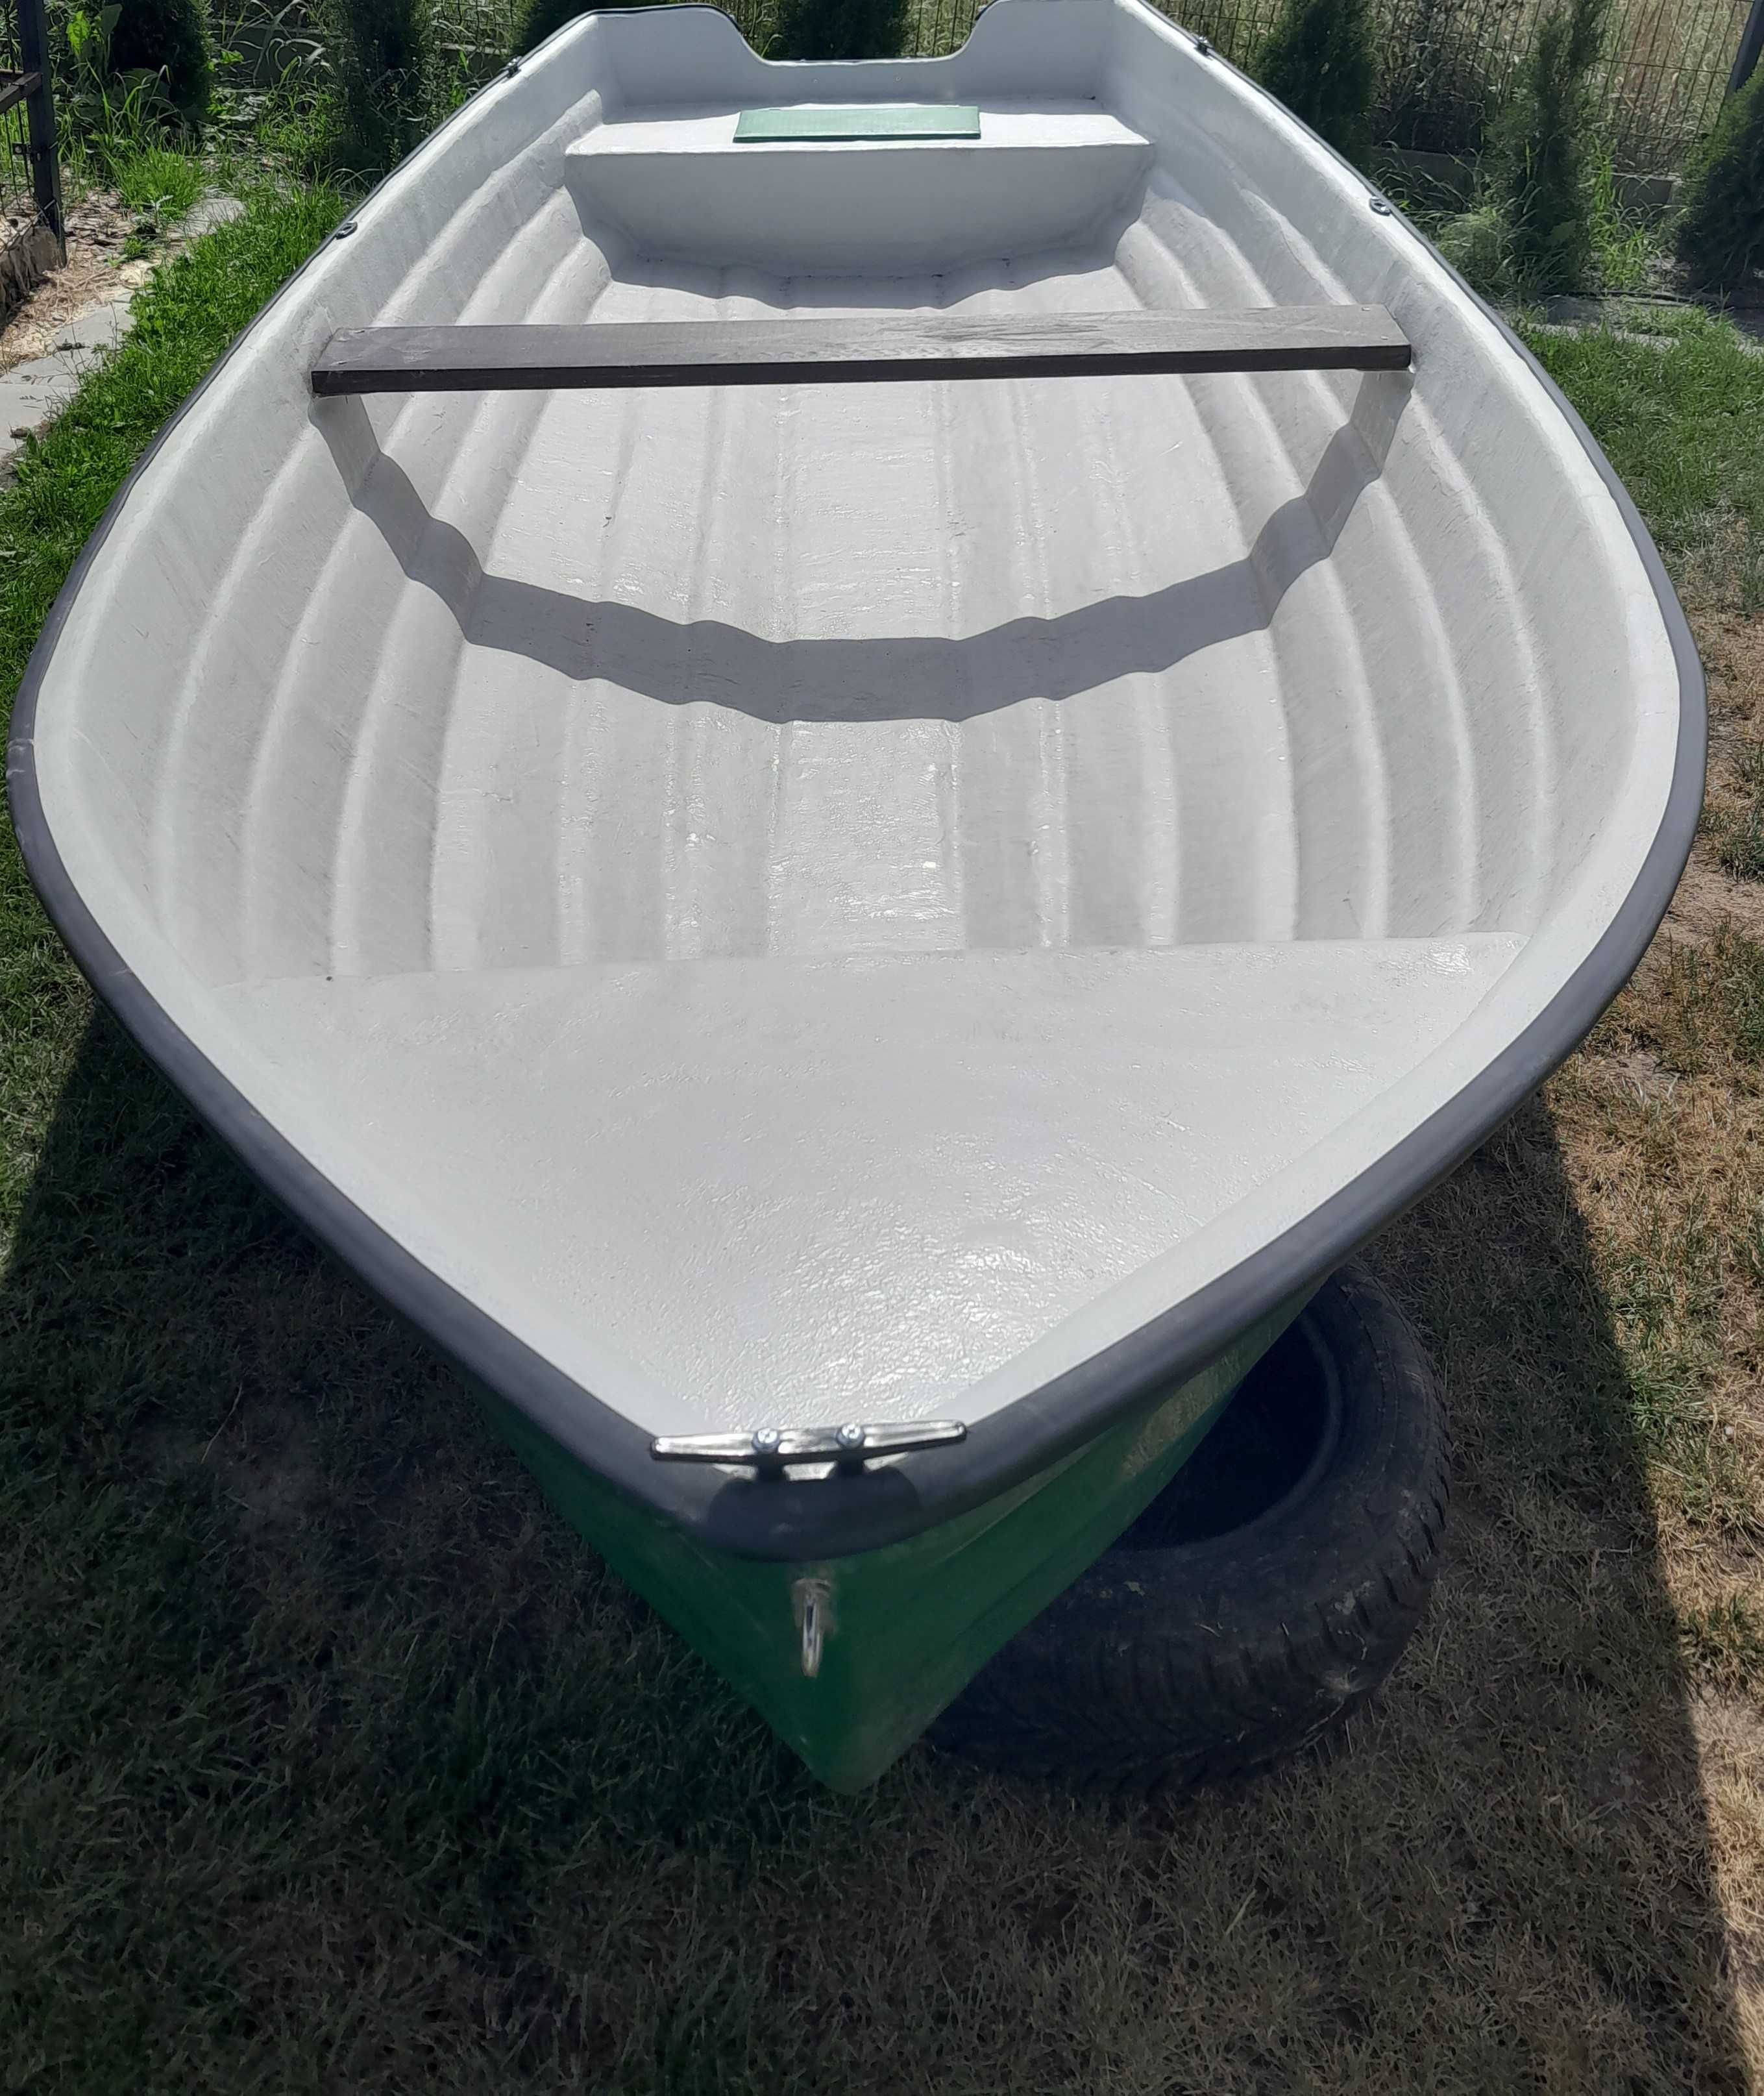 Nowa łódka 440x173 laminat lodka lodz duza laminat transport